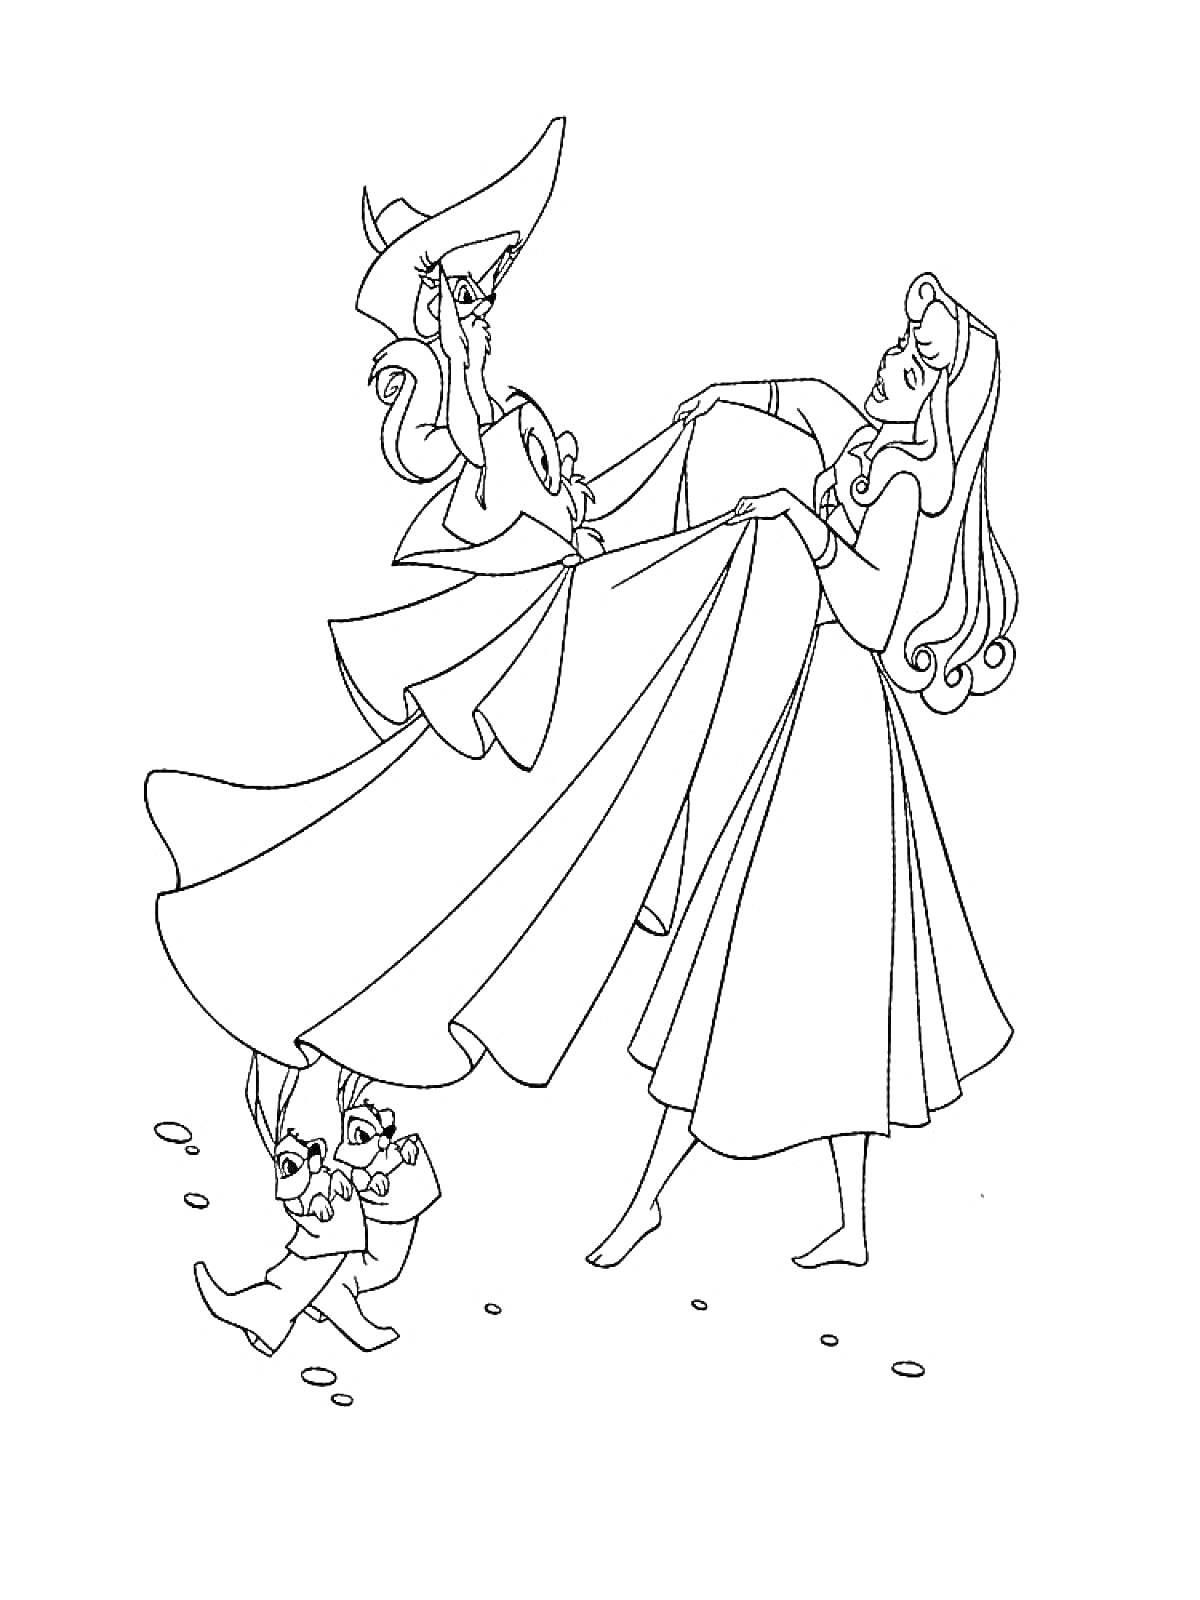 РаскраскаСпящая красавица, принцесса Аврора, две феи, кролик, лес, платье